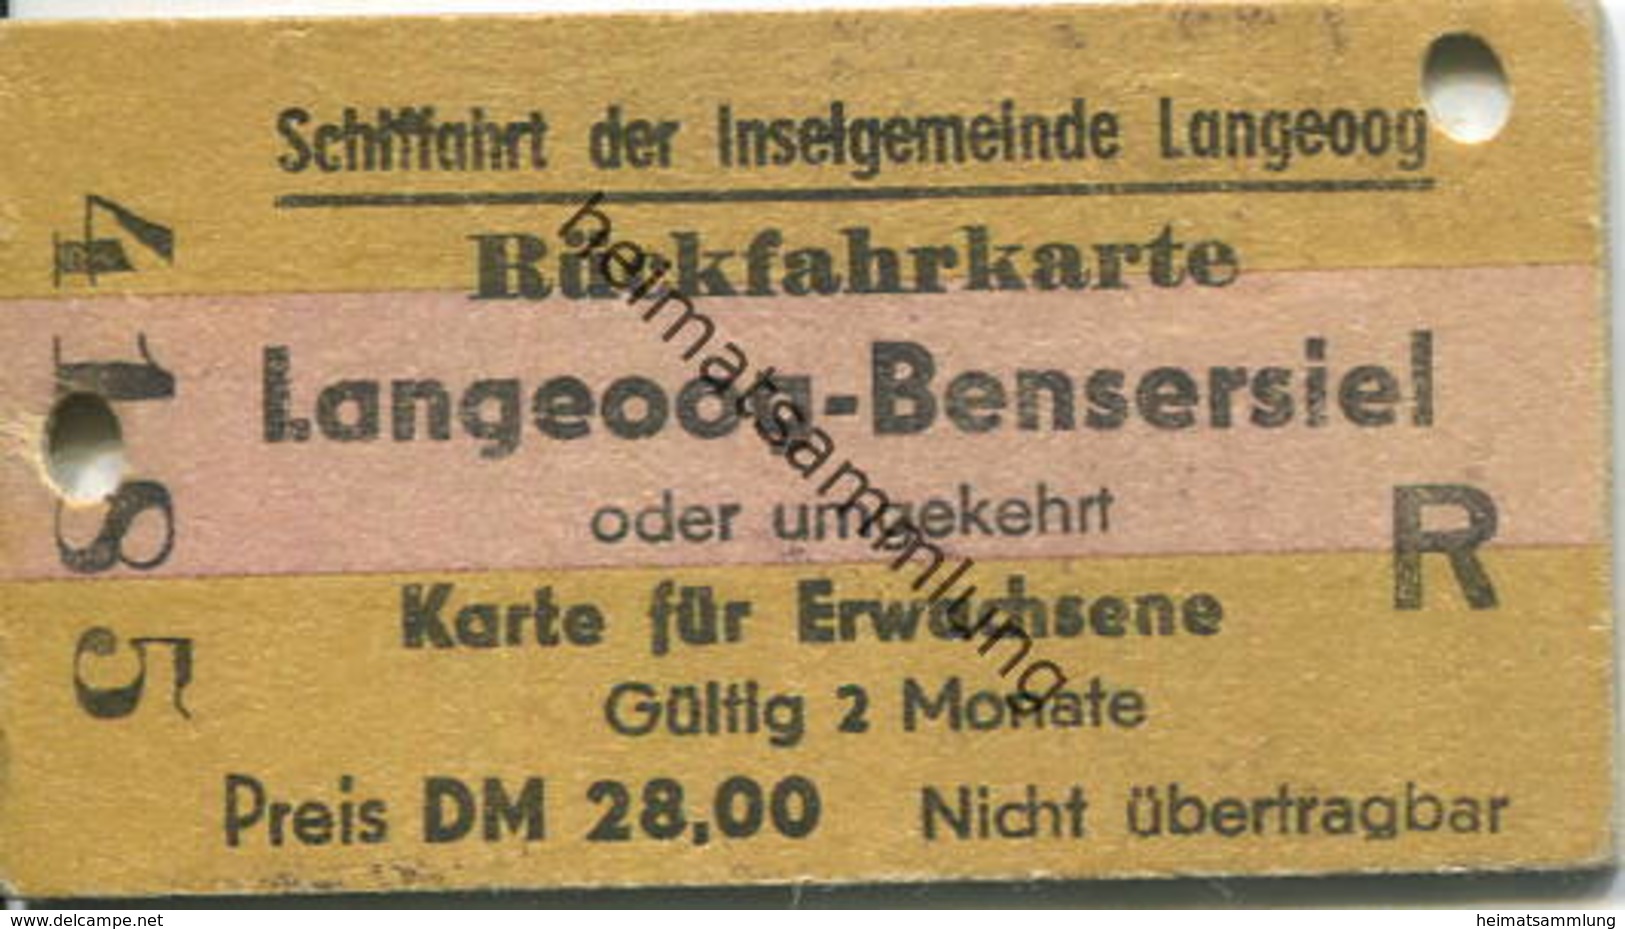 Deutschland - Schiffahrt Der Inselgemeinde Langeoog - Rückfahrkarte Langeoog-Bensersiel - Fahrkarte 1978 - Europe